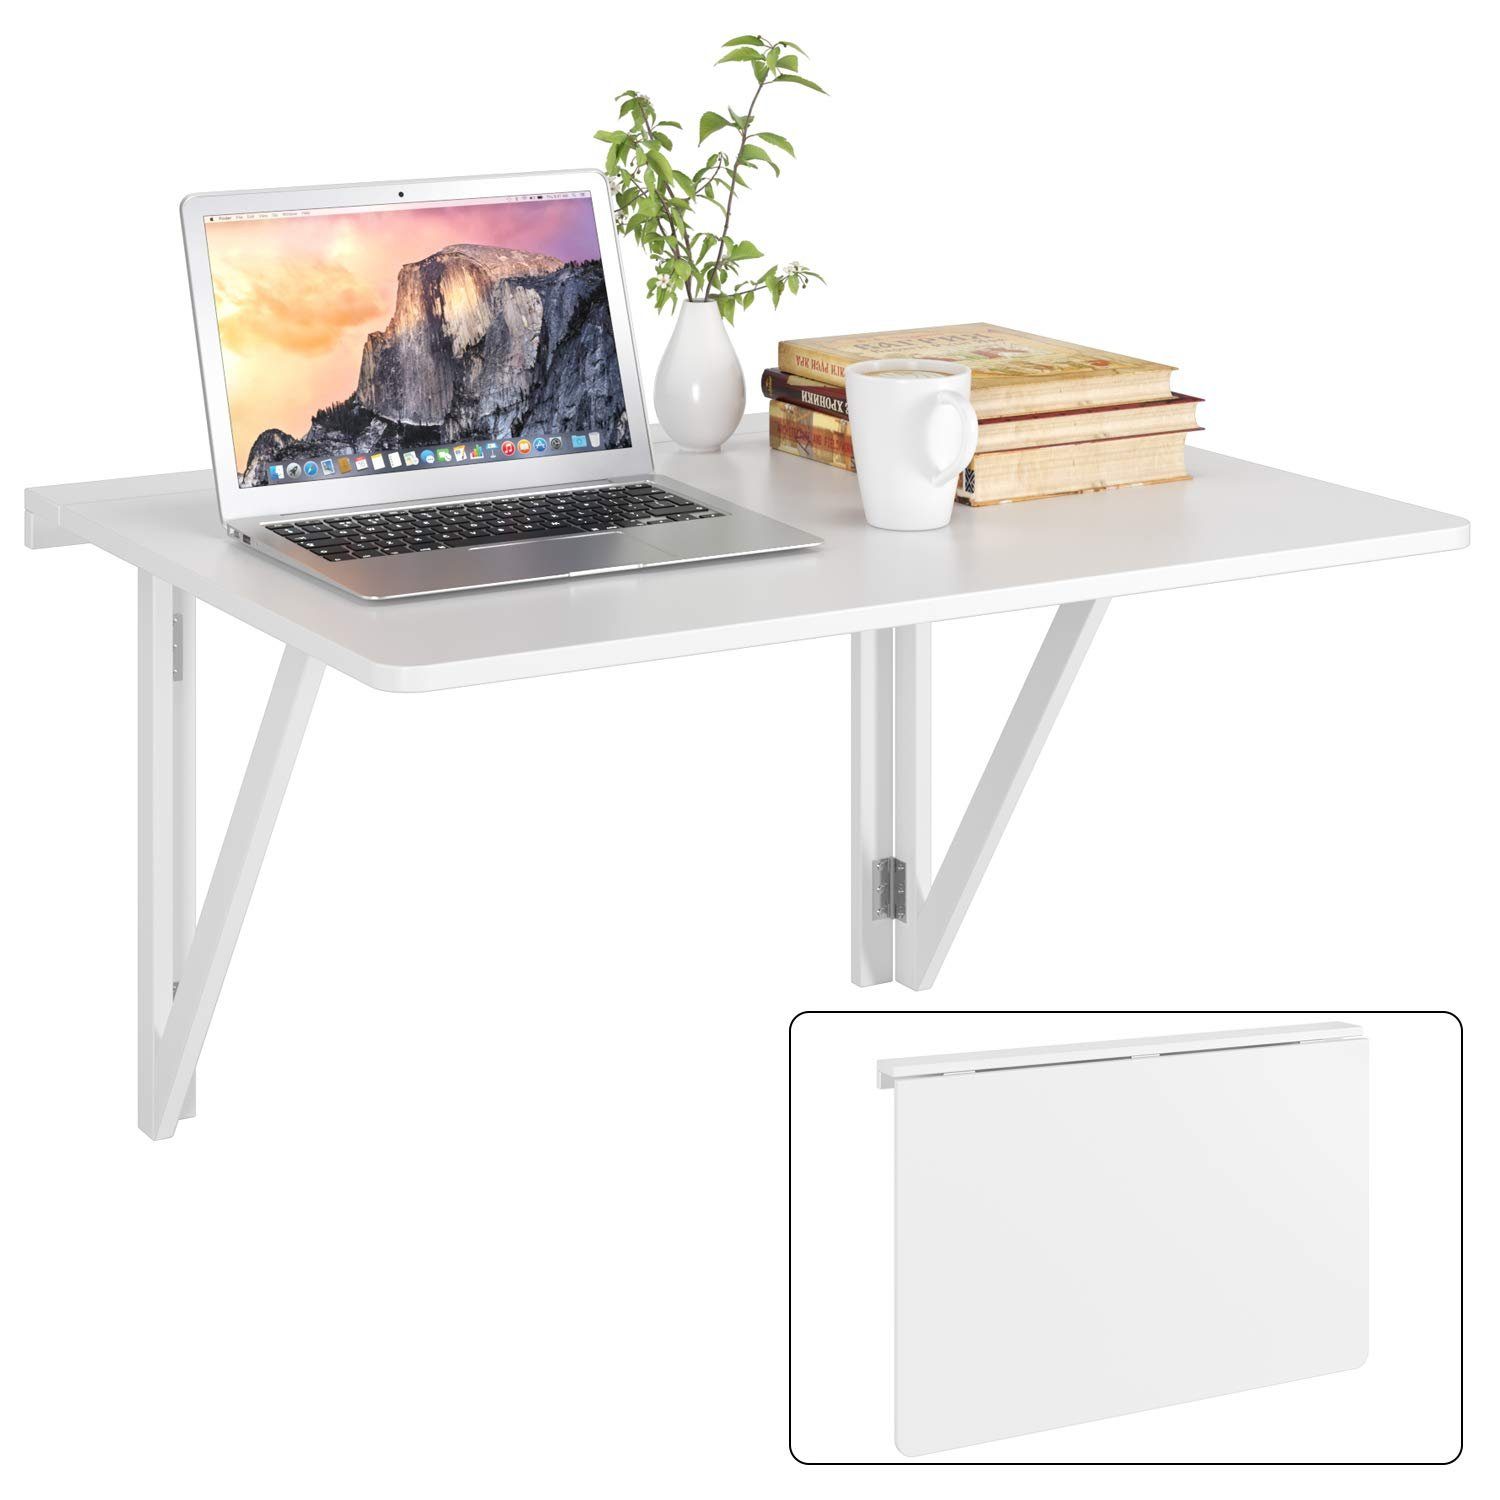 Homfa Klapptisch, Wandklapptisch Esstisch klappbarer Schreibtisch weiß